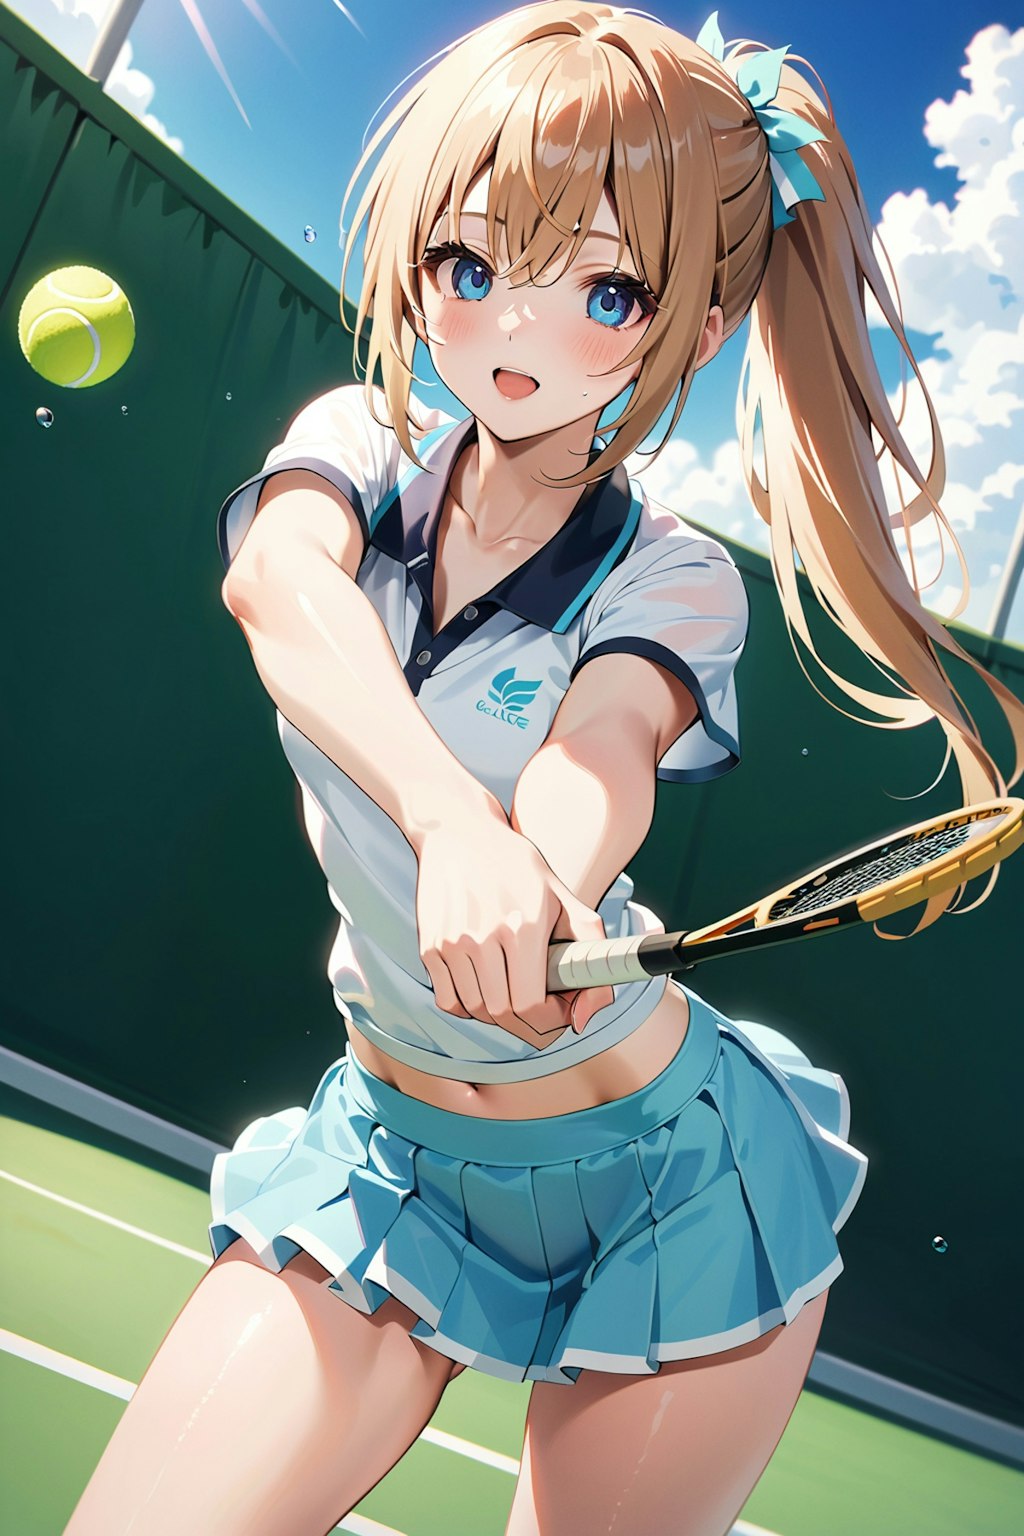 テニス女子